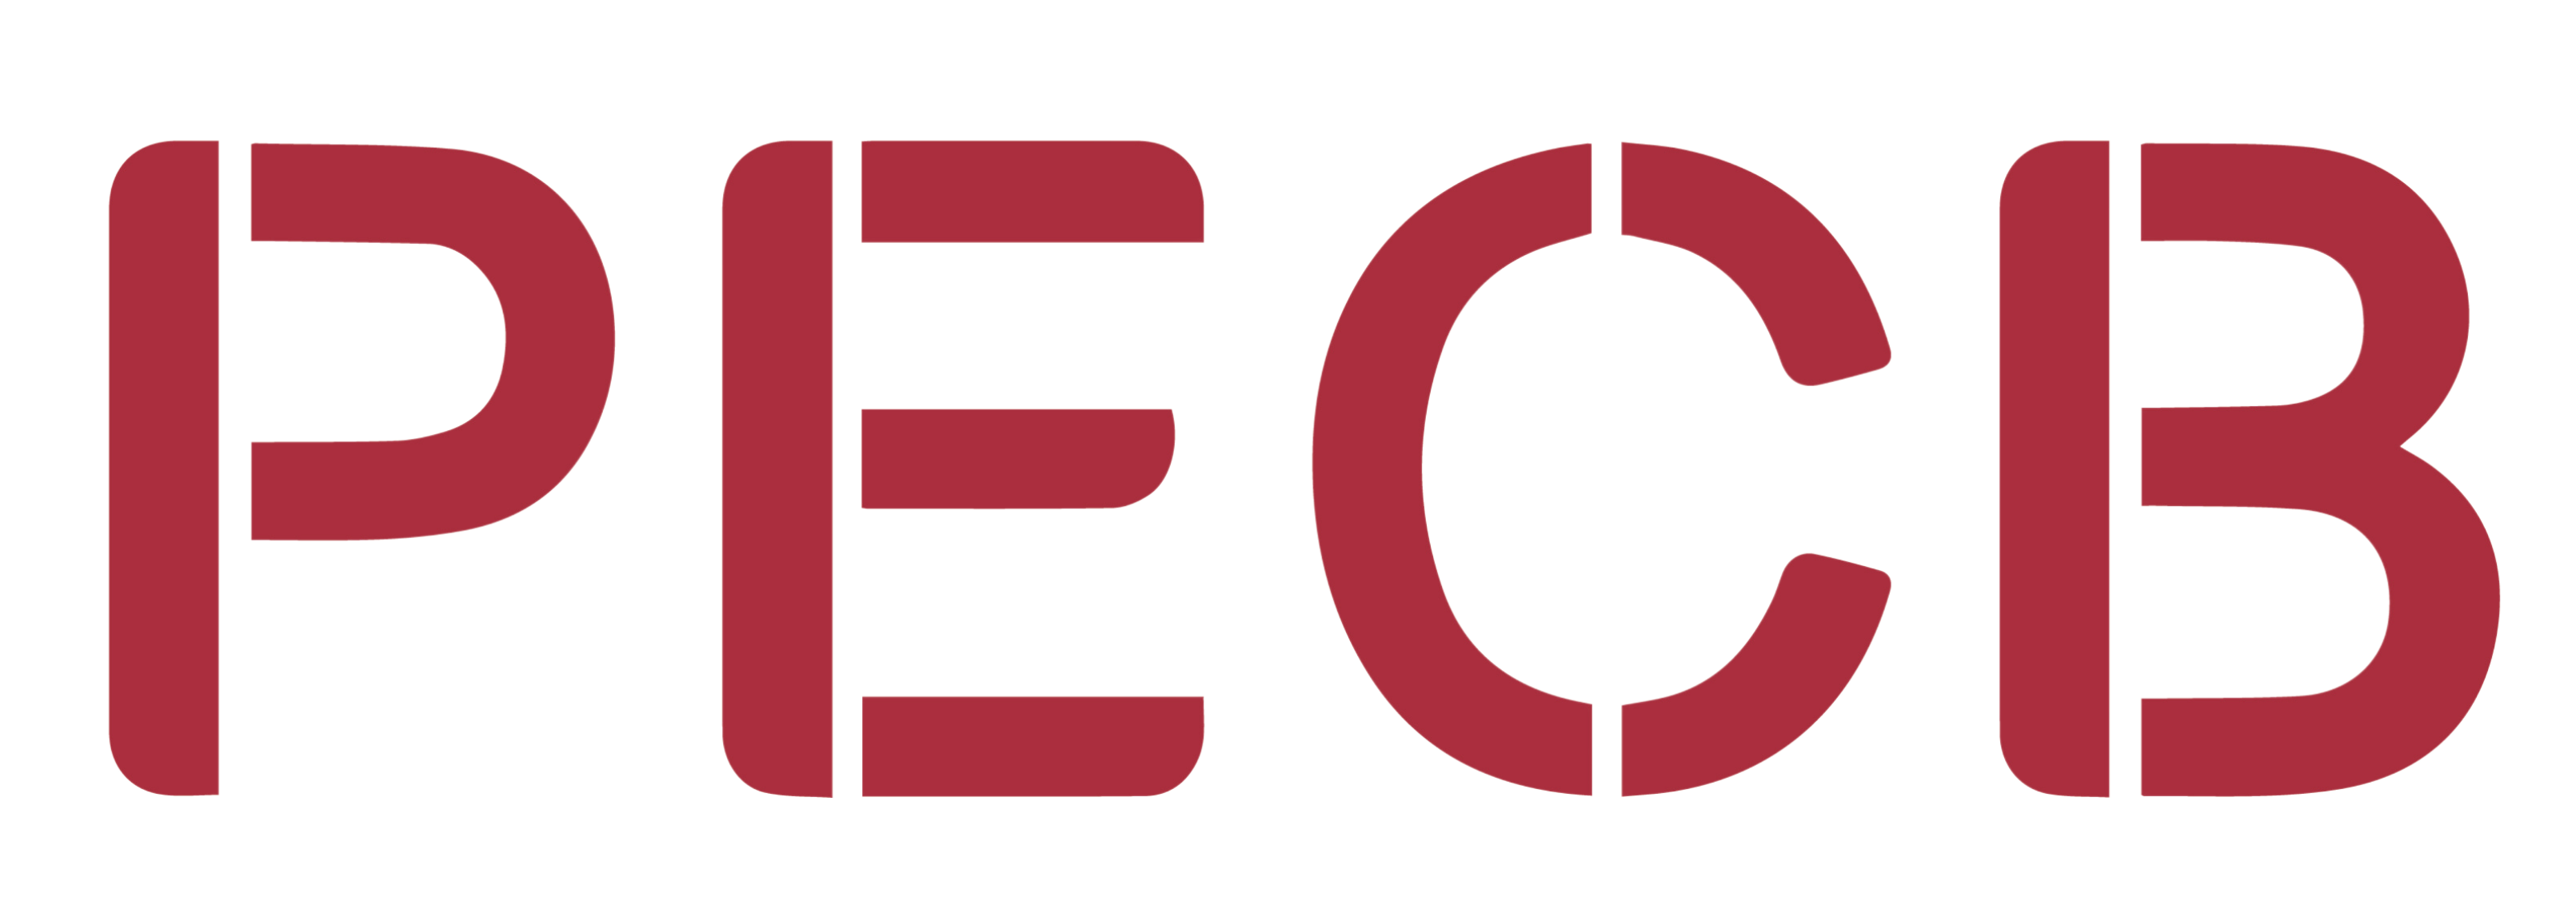 PECB-Logo.png